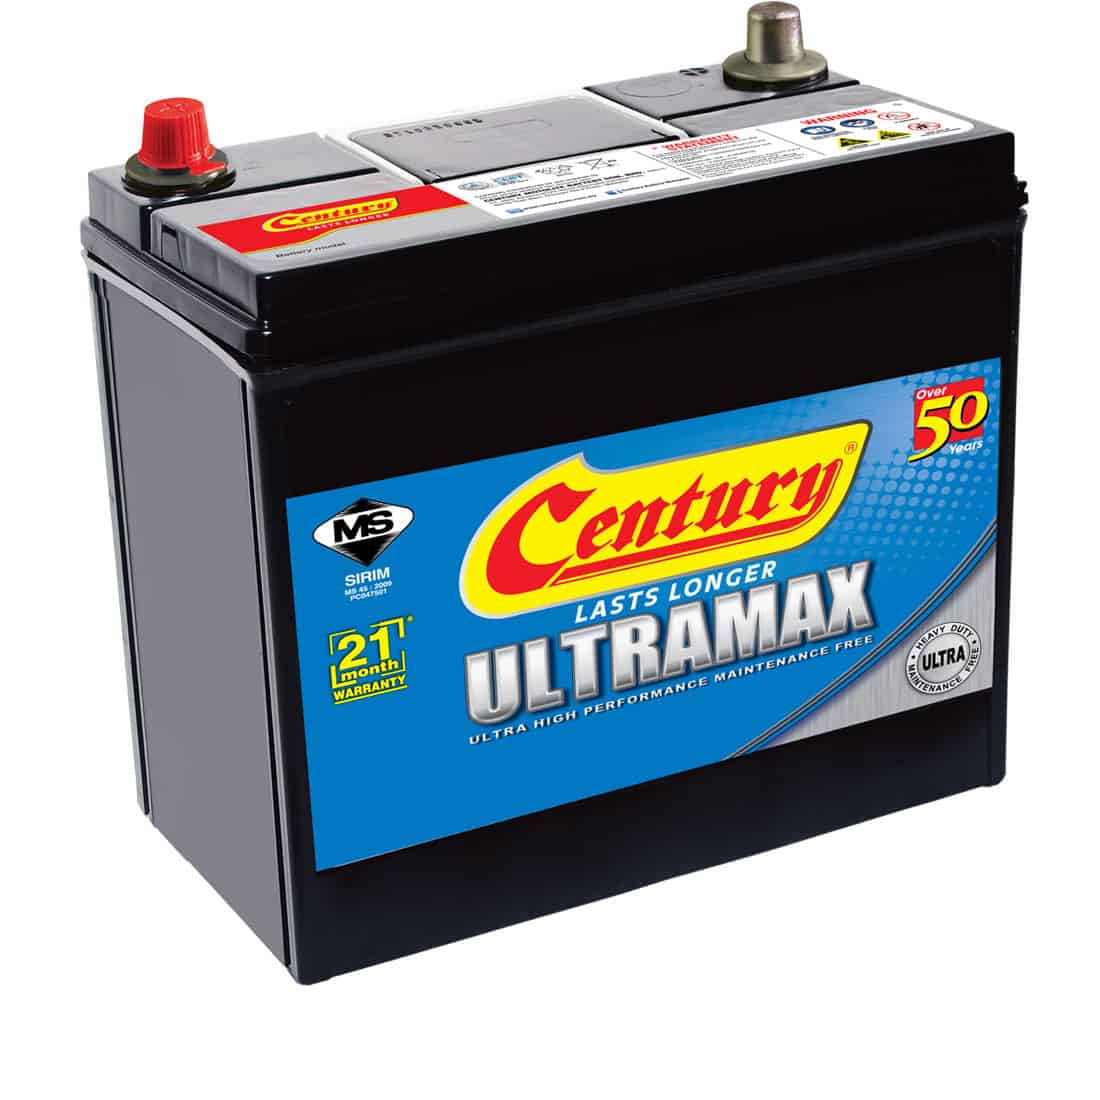 ВД Battery. Ultramax Supramax.